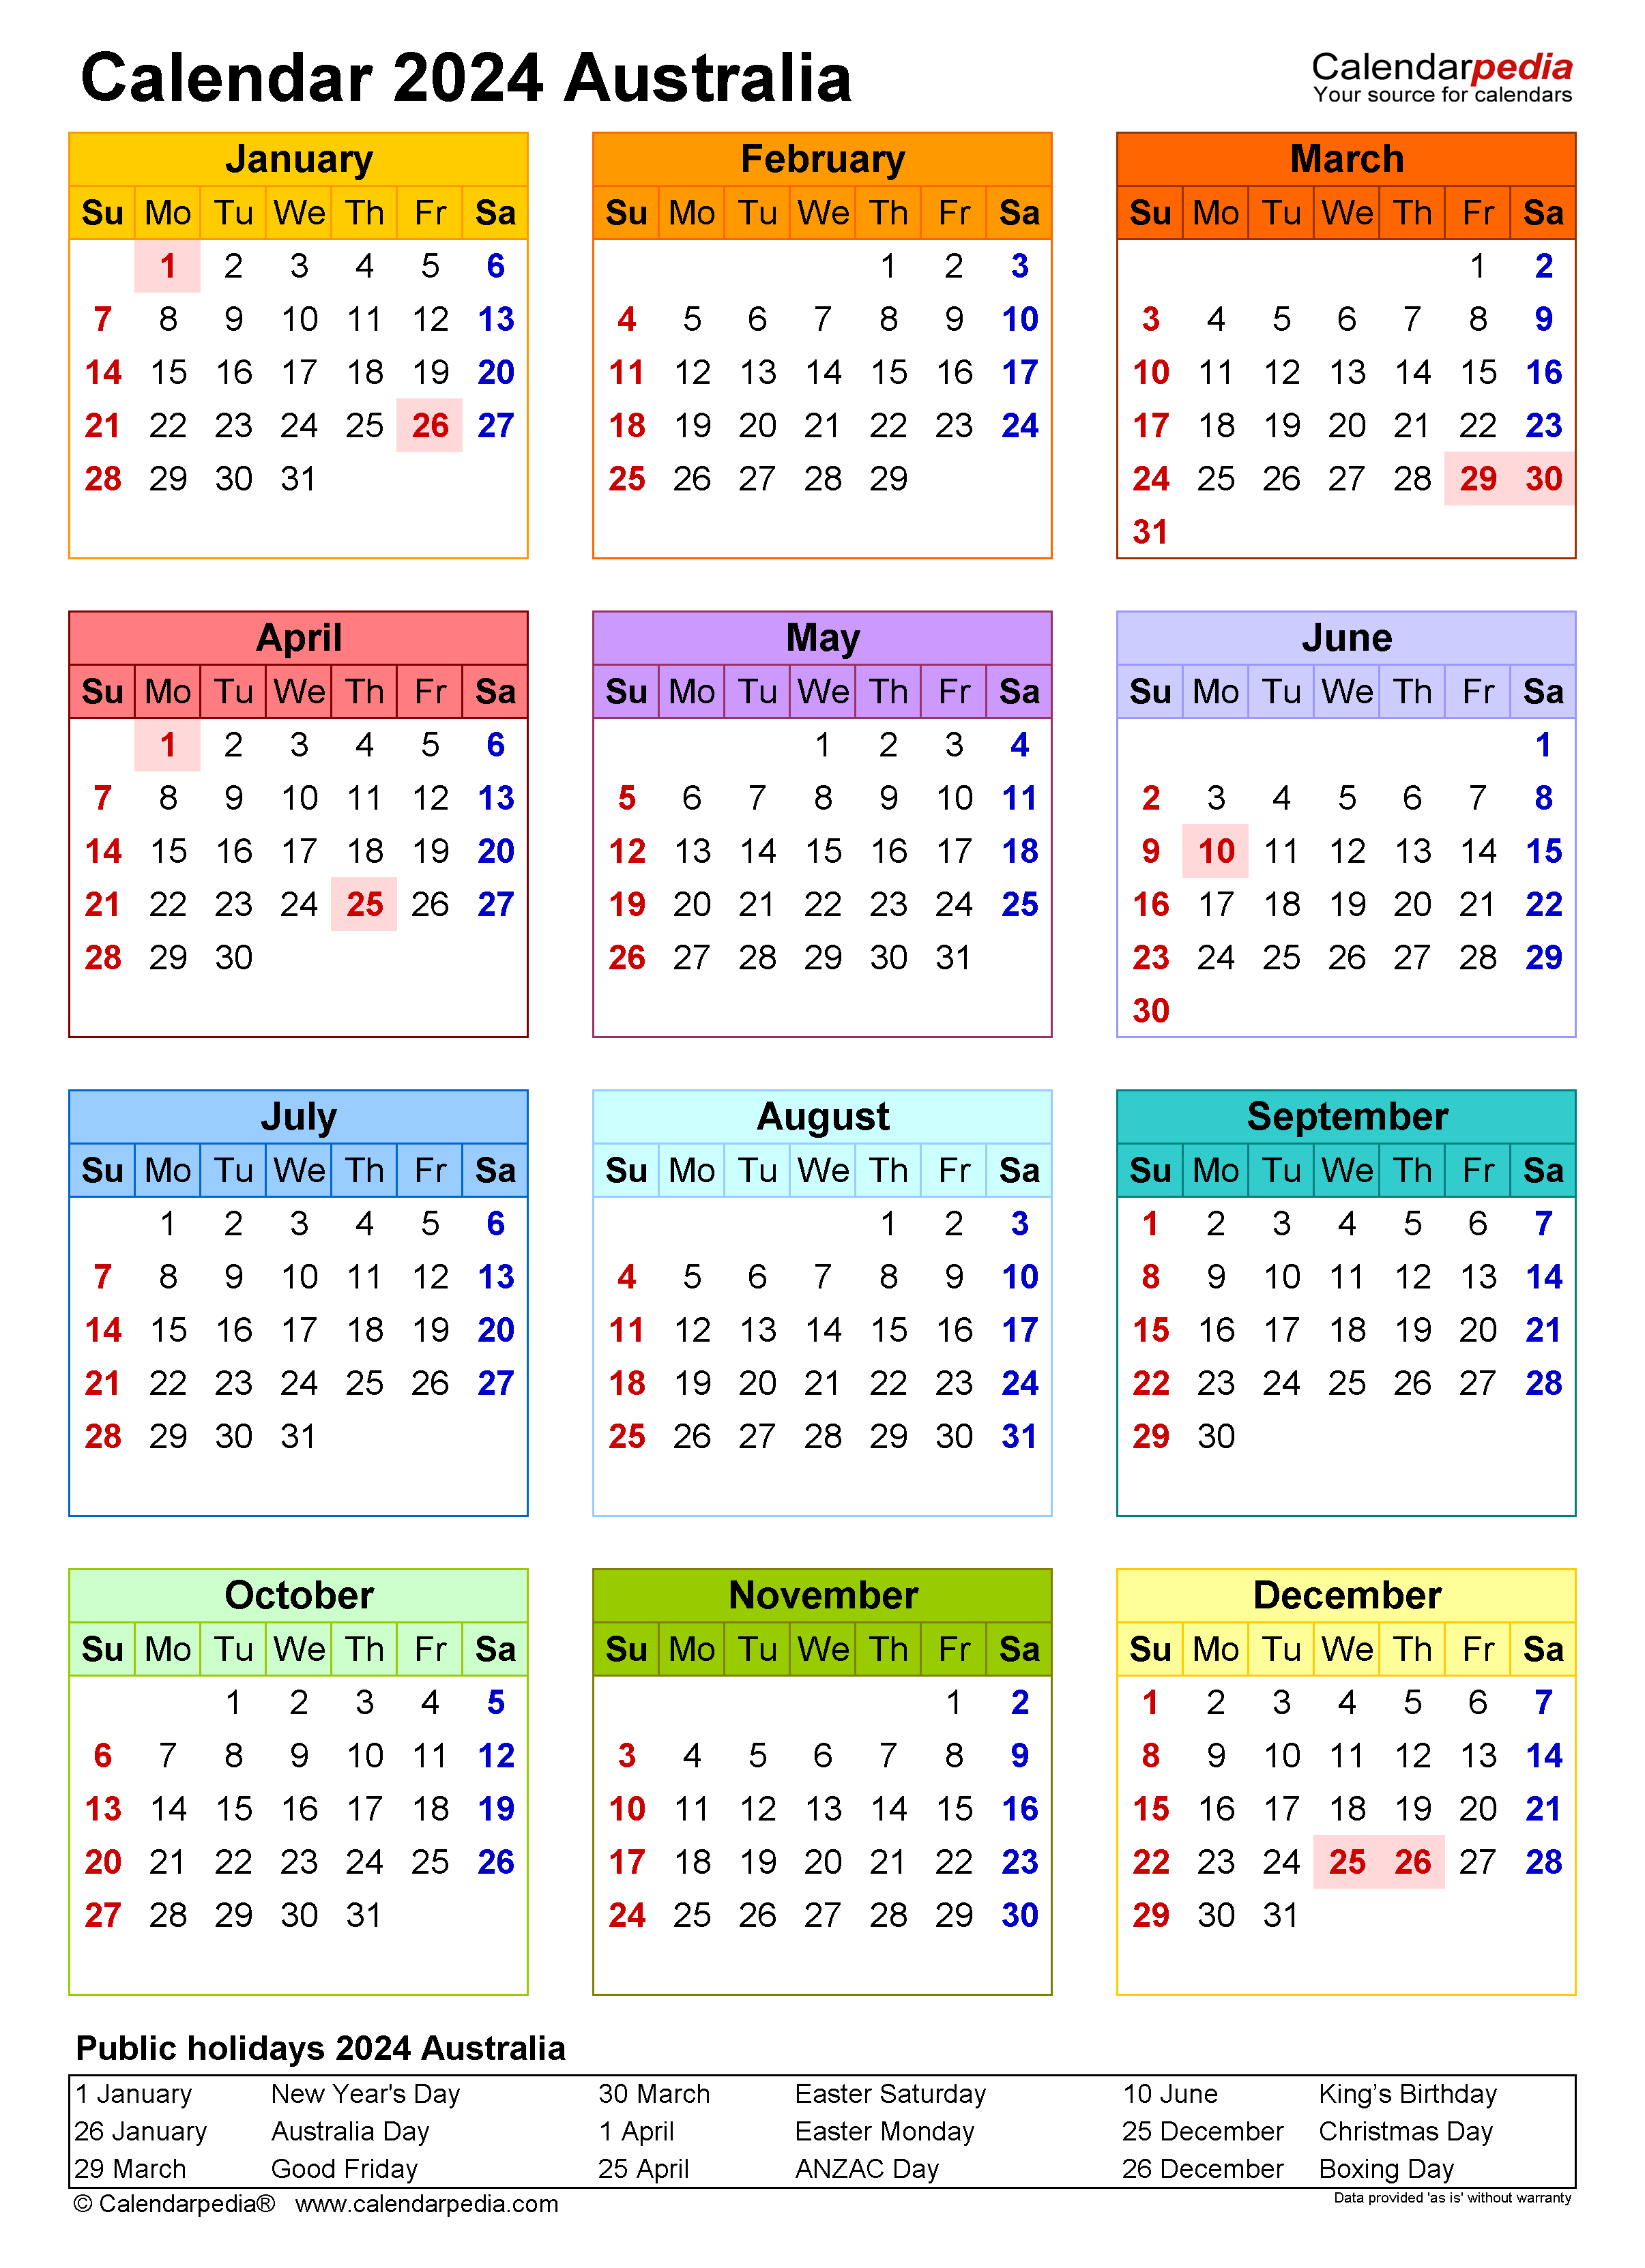 Free Printable Calendar 2024 Printable Calendar 2023 - Free Printable 2024 Calendar With Holidays 3 Months Per Page